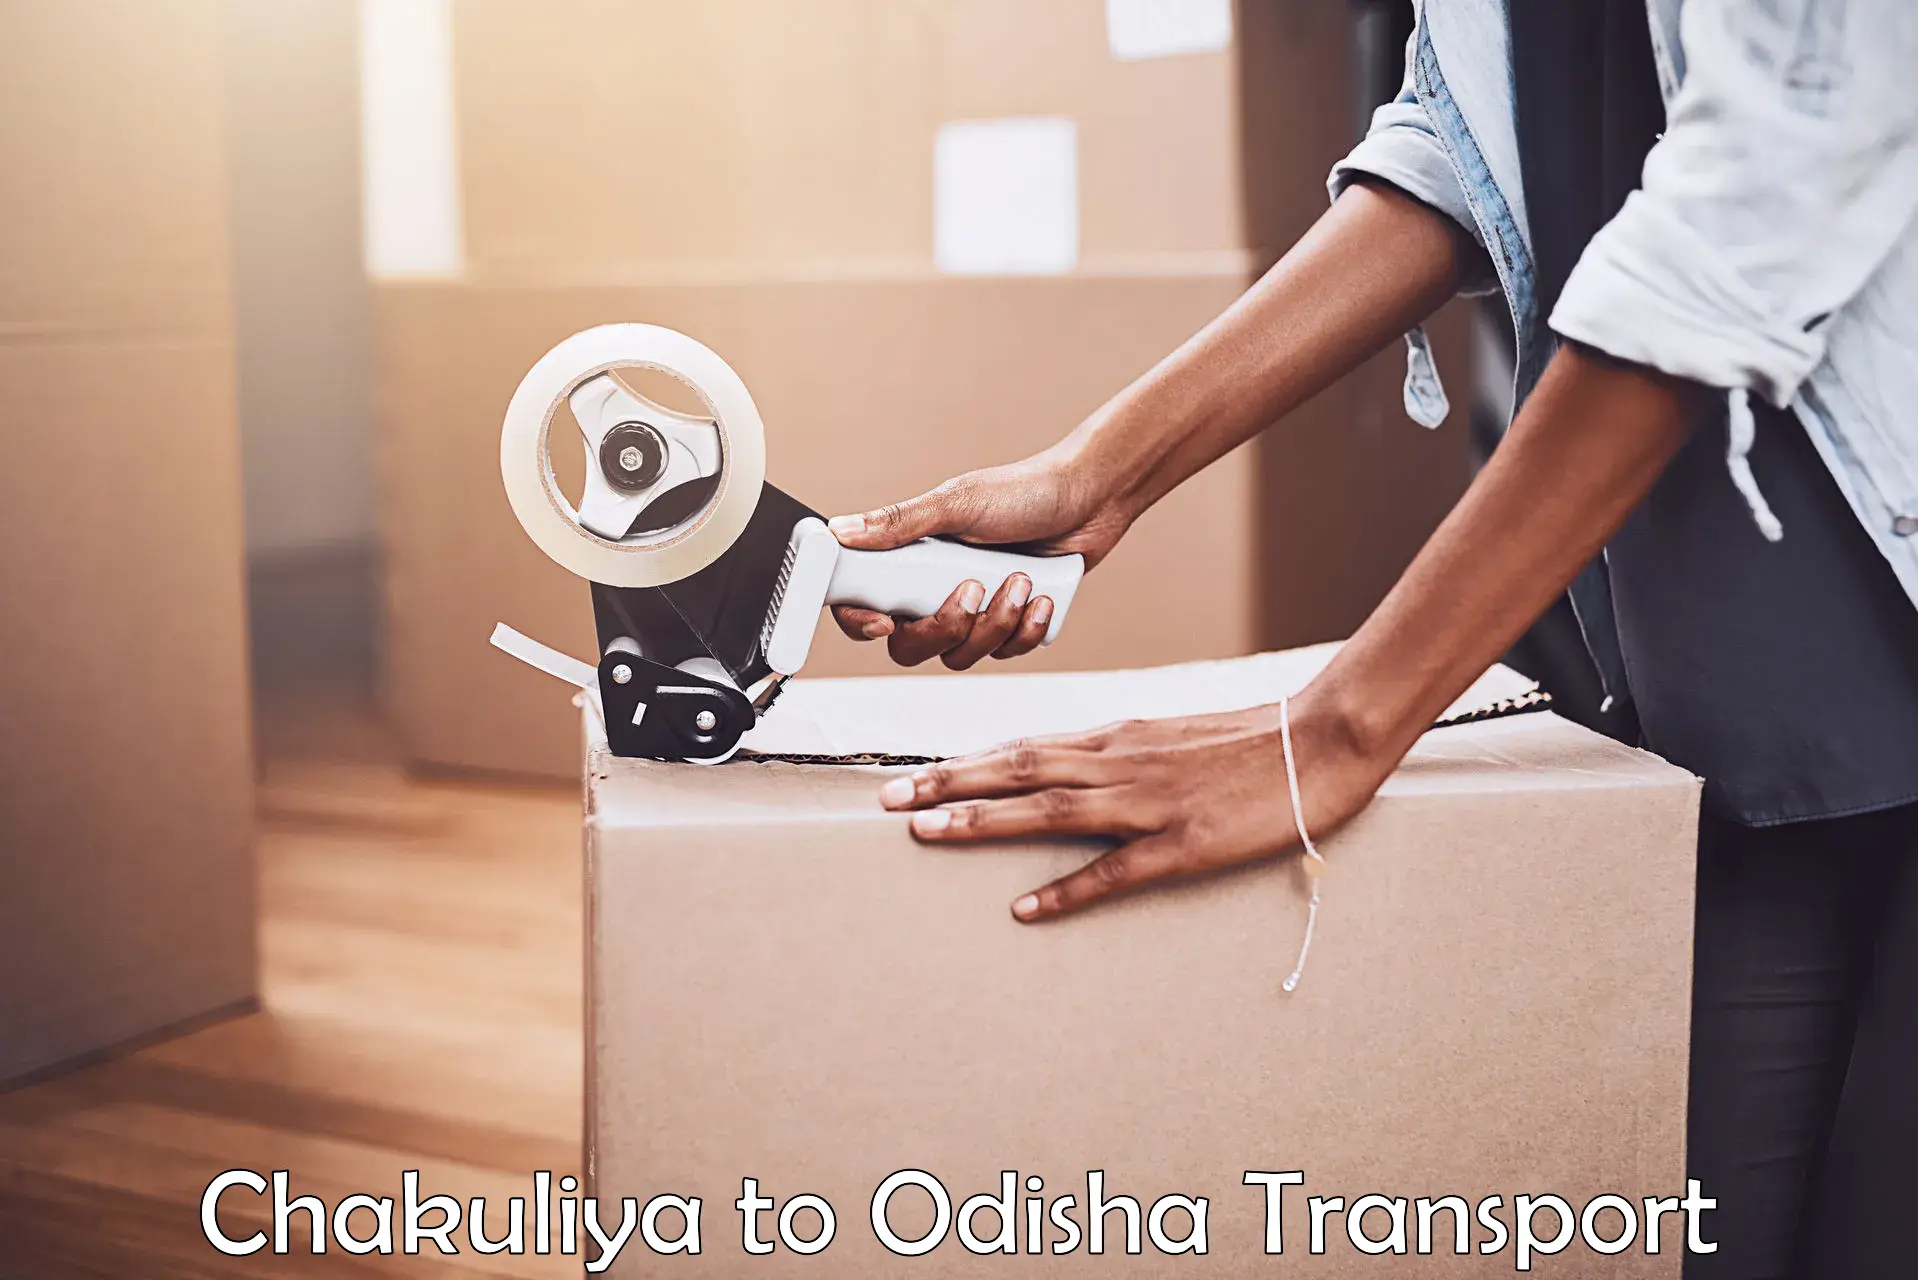 Interstate transport services Chakuliya to Odisha